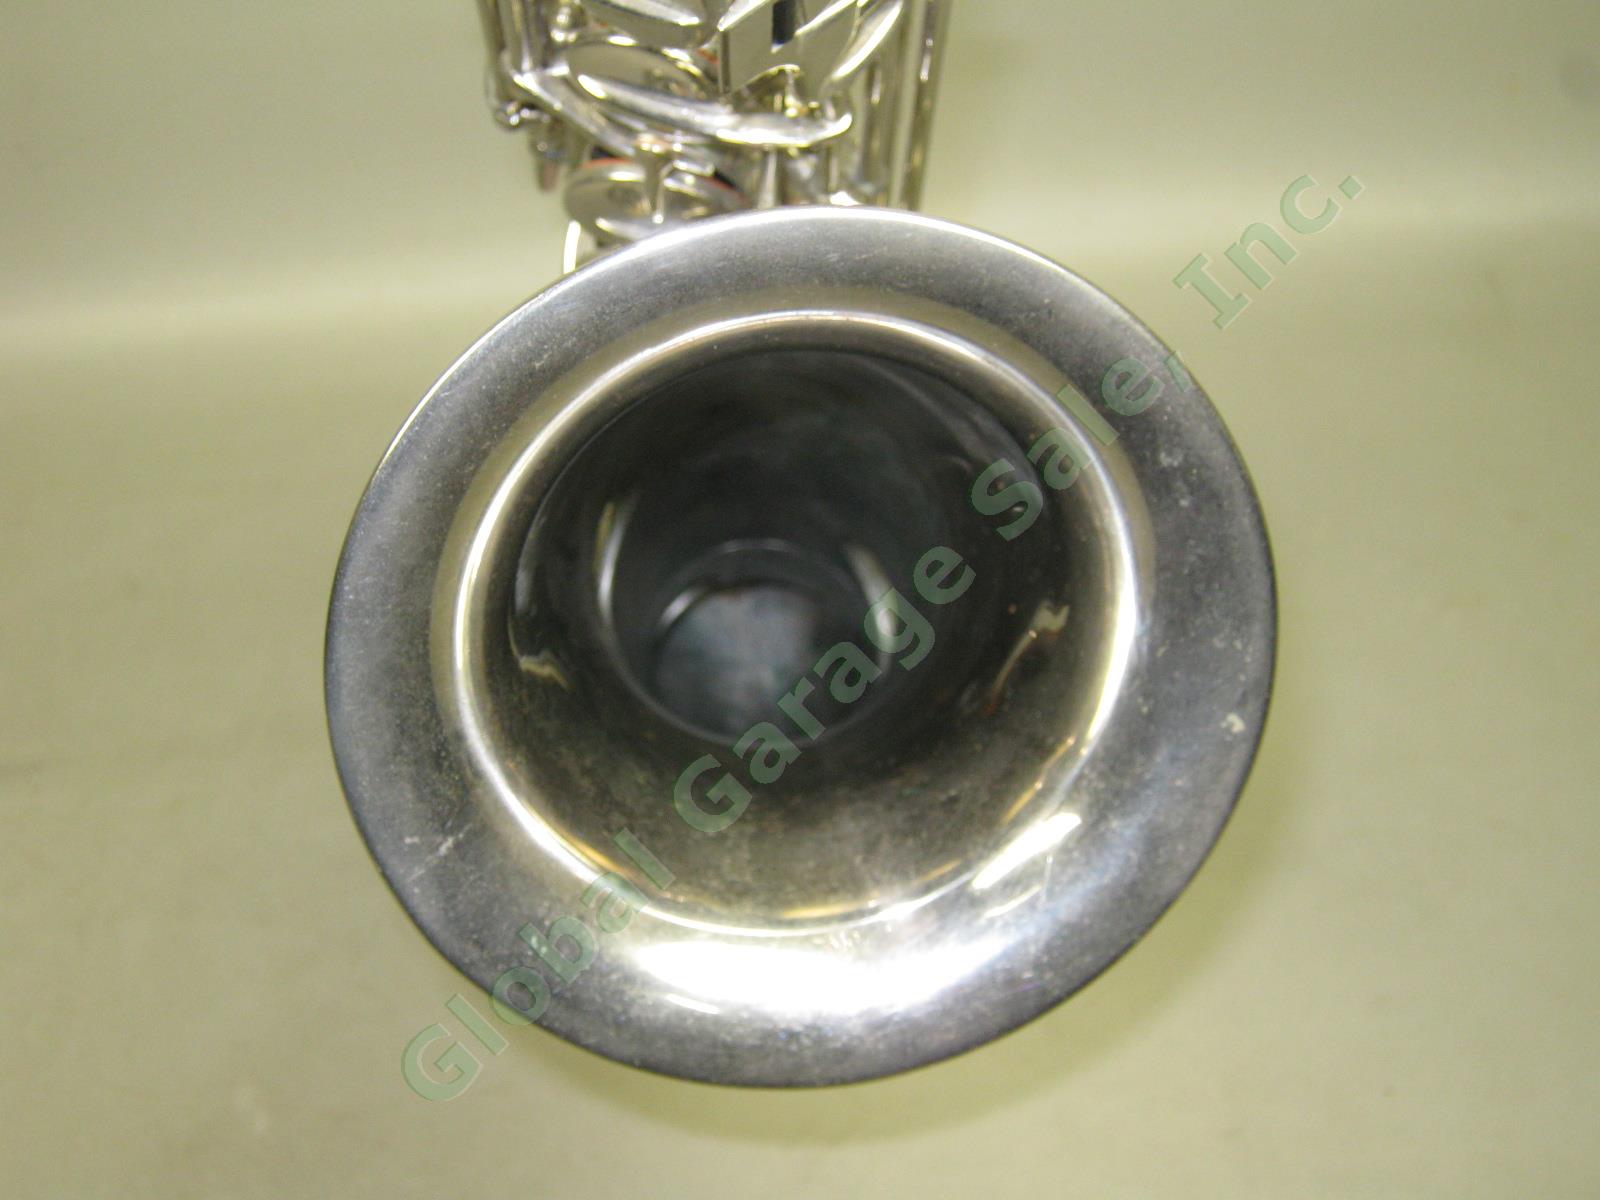 Vtg Antique C G CG Conn C-Melody Saxophone + Case 1119954 106159 L Patented 1914 6